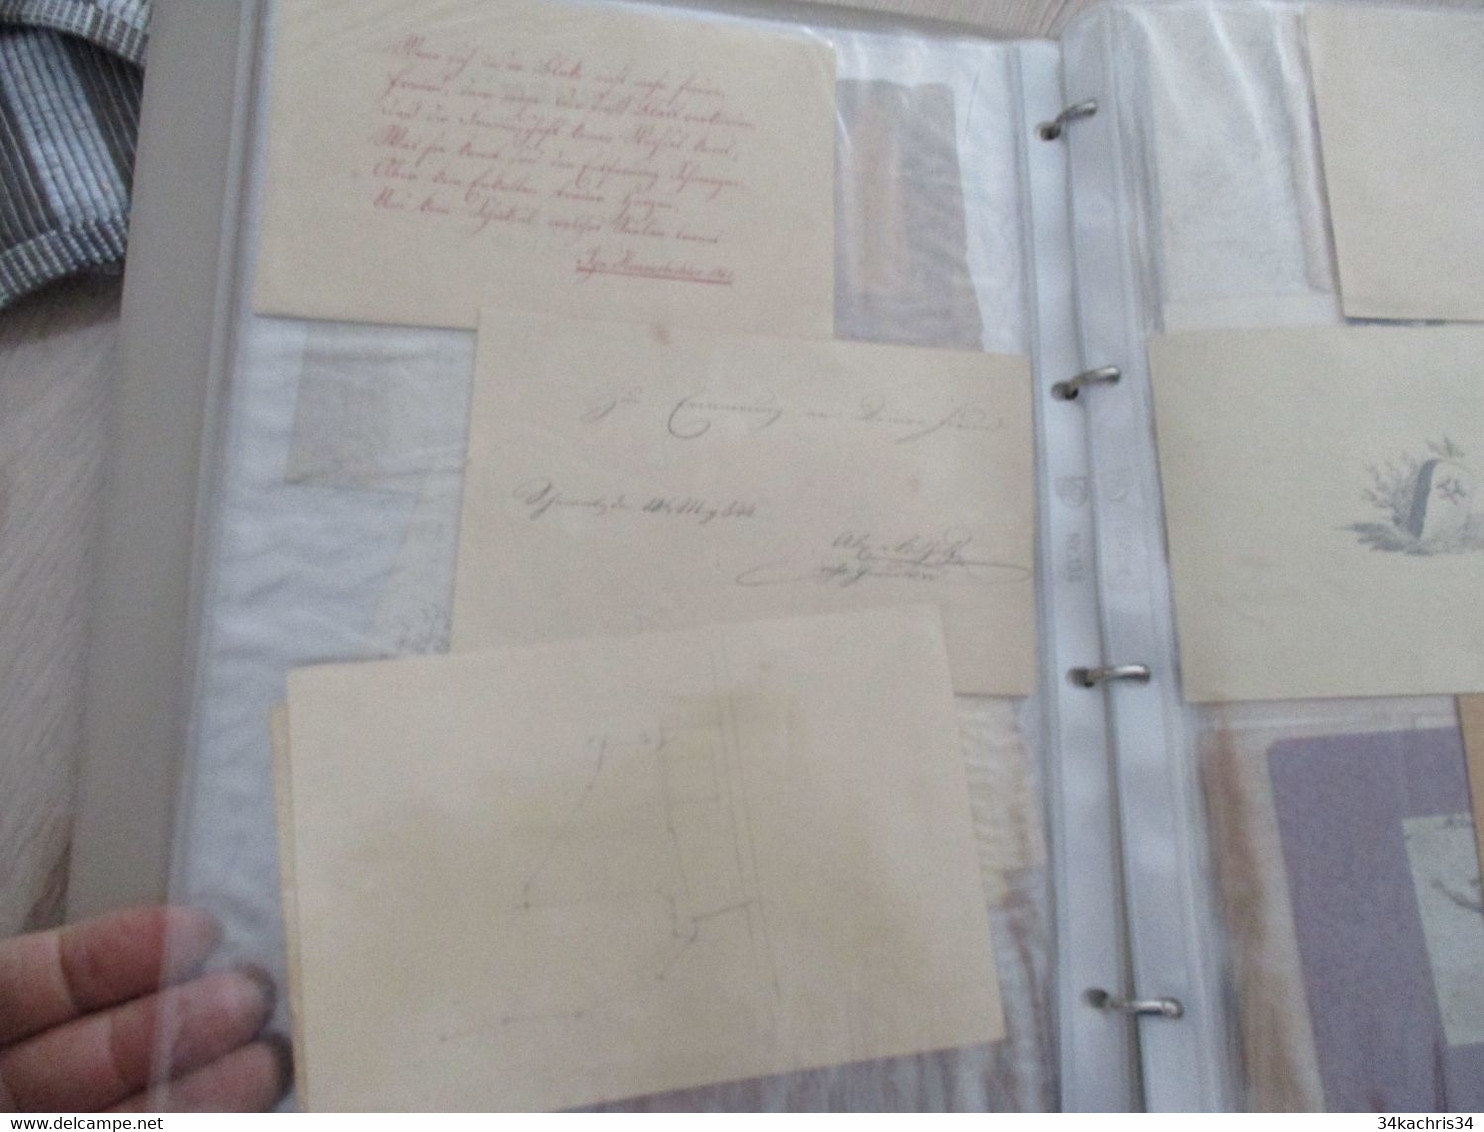 Autriche Ostria Slazburg Salsbourg accumulation de famille  + de documents 140 manuscrits dessins originaux autographes